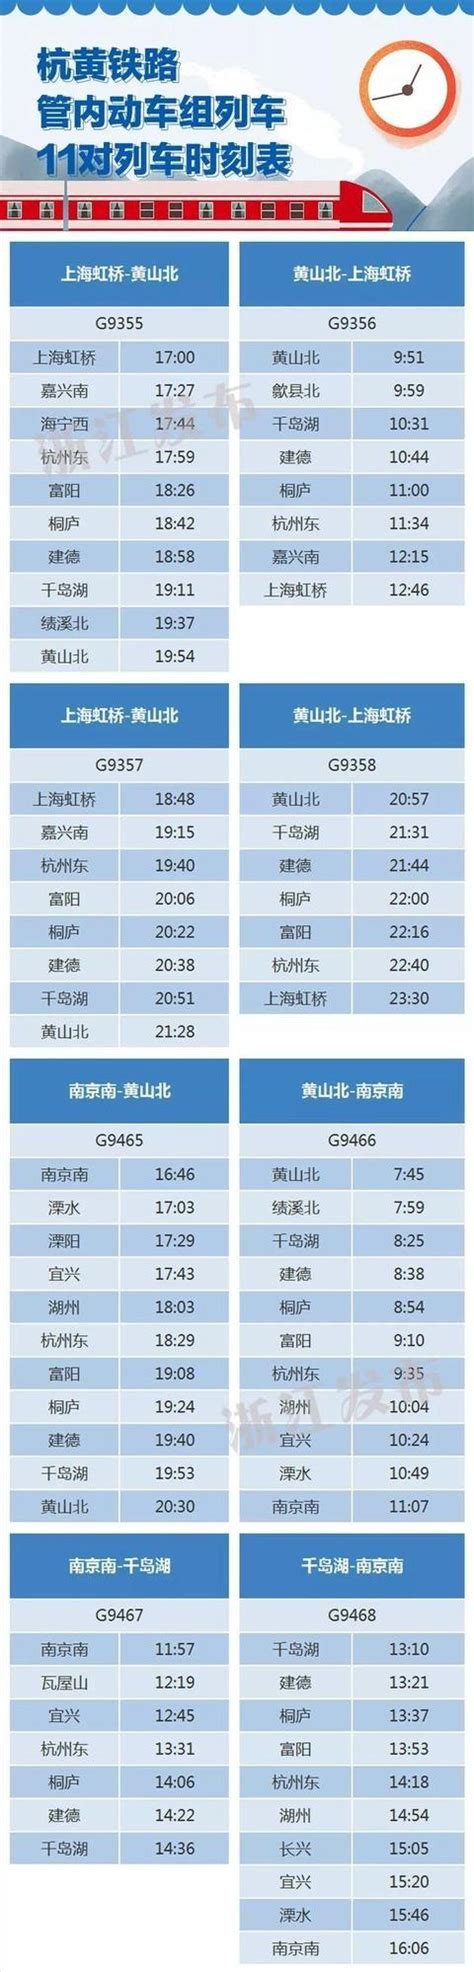 台州到杭州东_台州到杭州东高铁_台州到杭州东时刻表_台州到杭州东火车票价